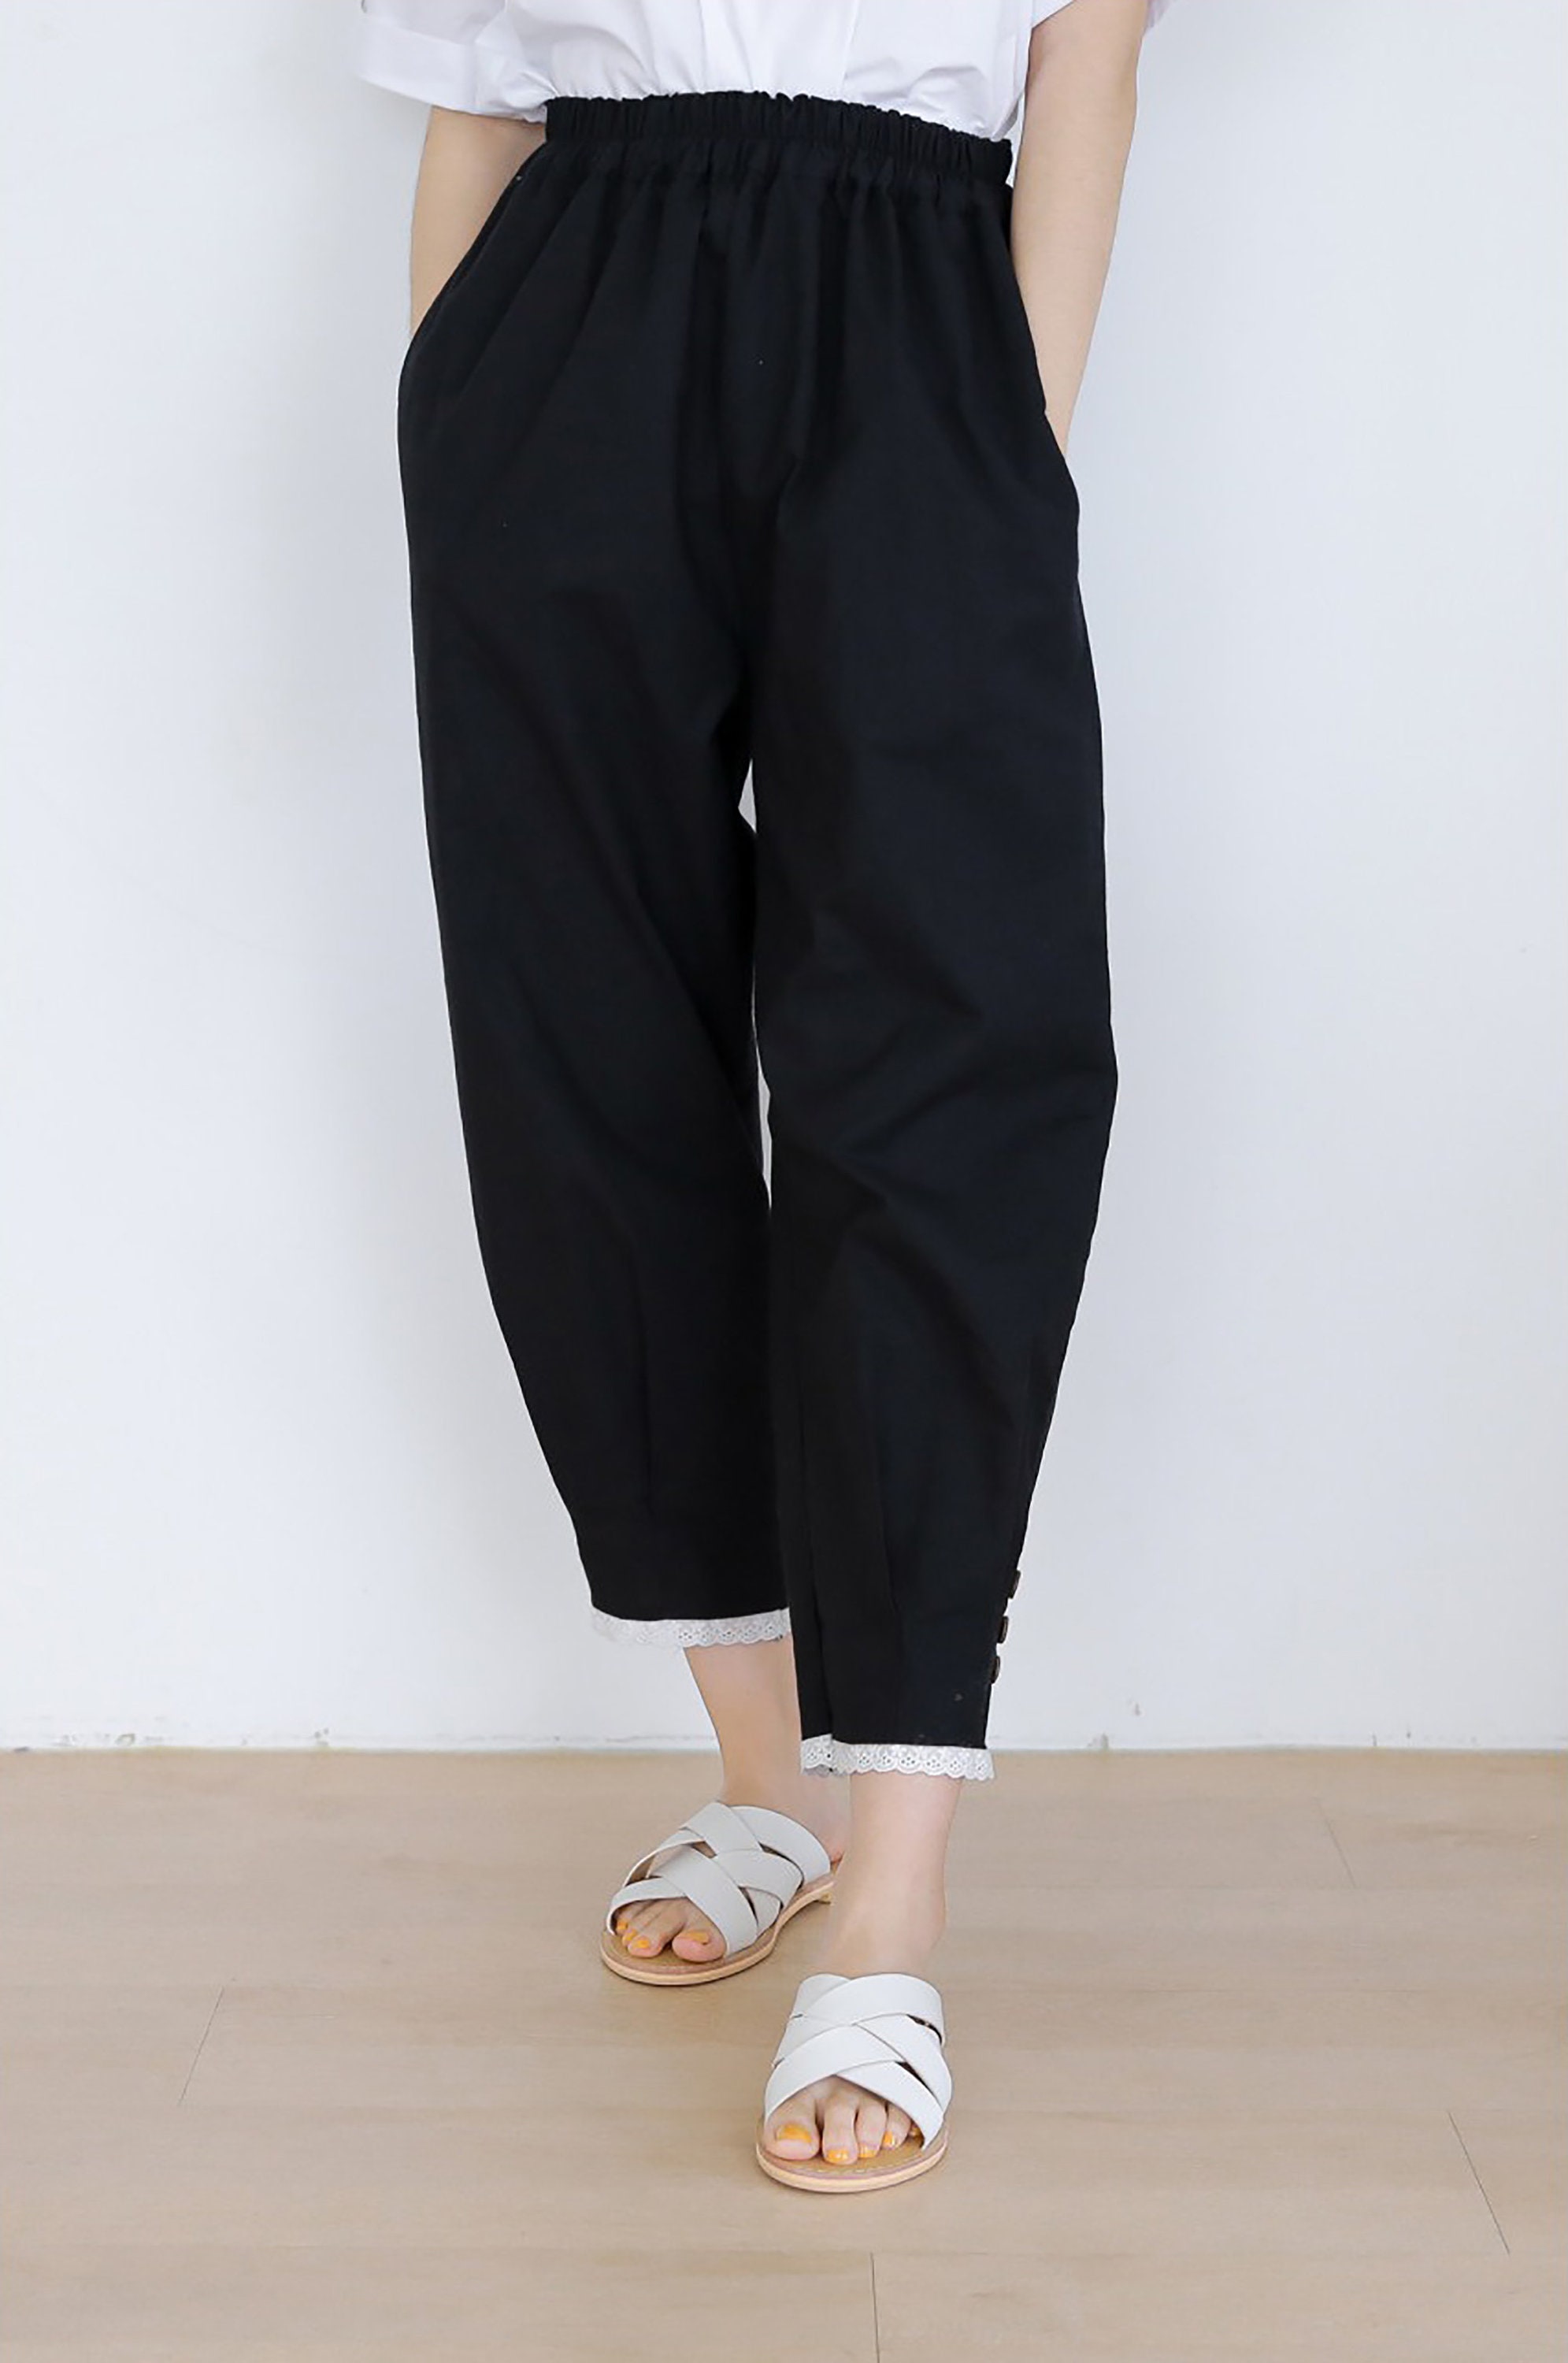 Korean Modern Hanbok Pants Daily Casual Pants Modernized | Etsy